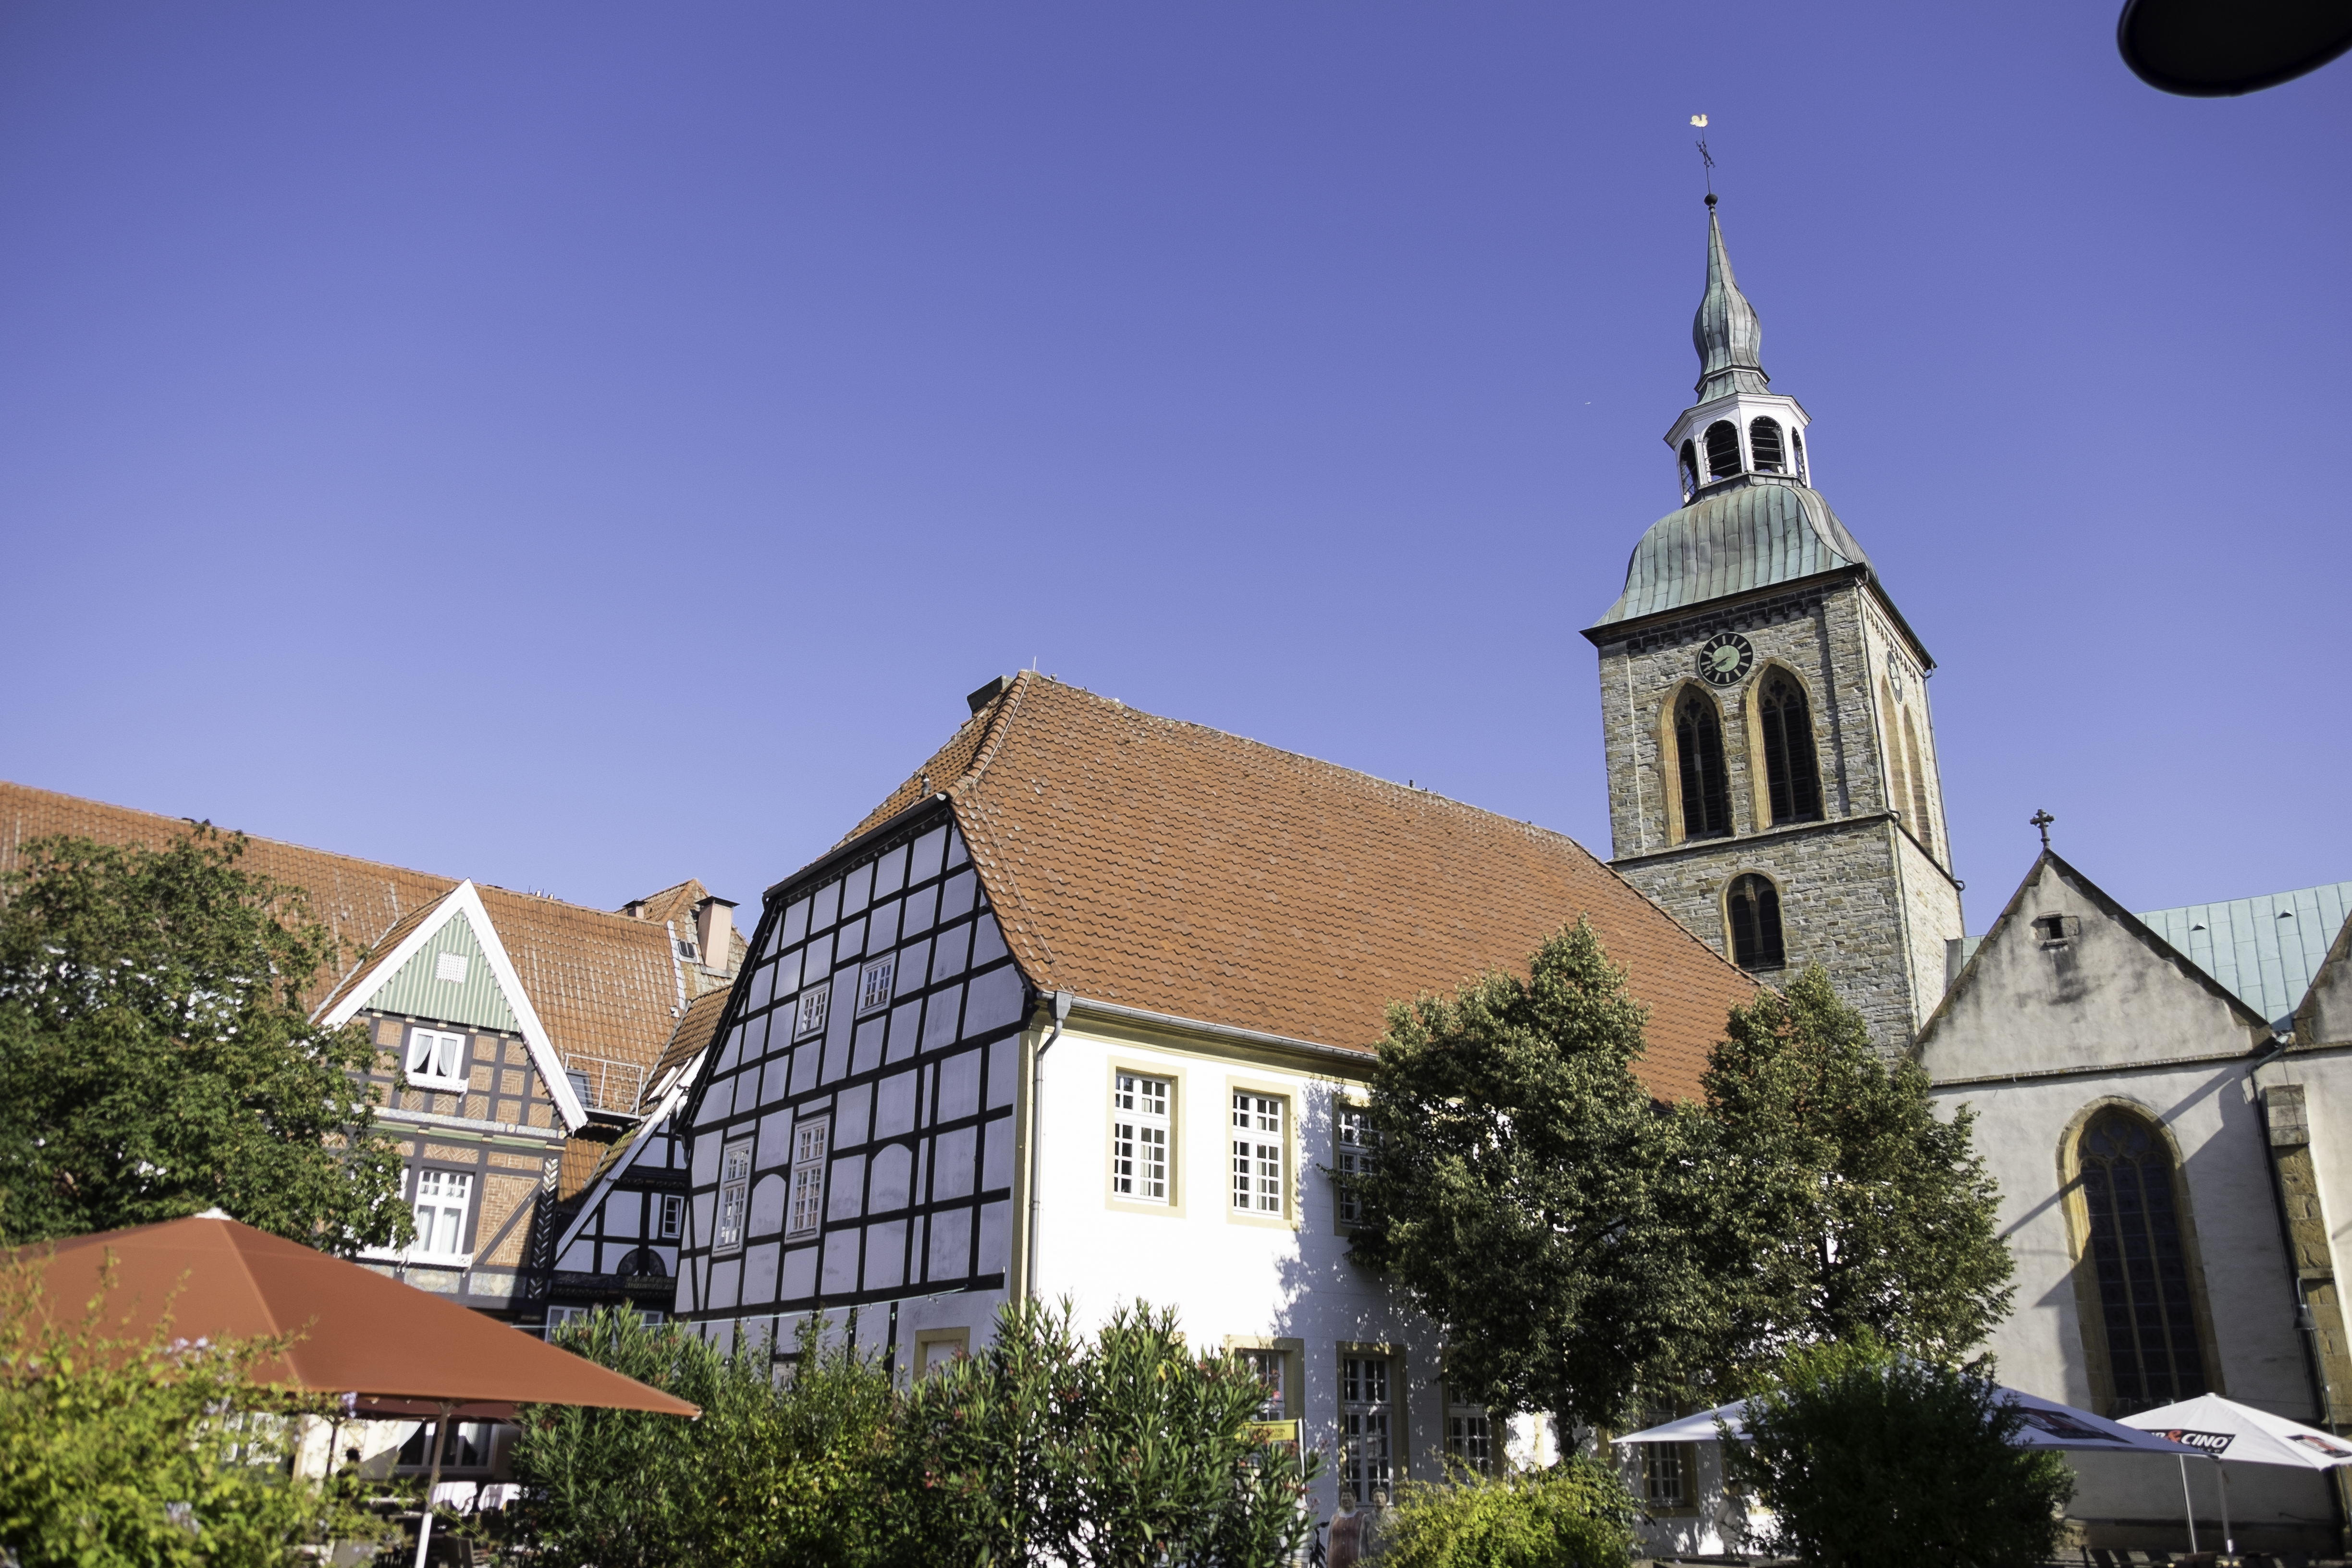 Historisches Rathaus Wiedenbrück & Aegidiuskirche